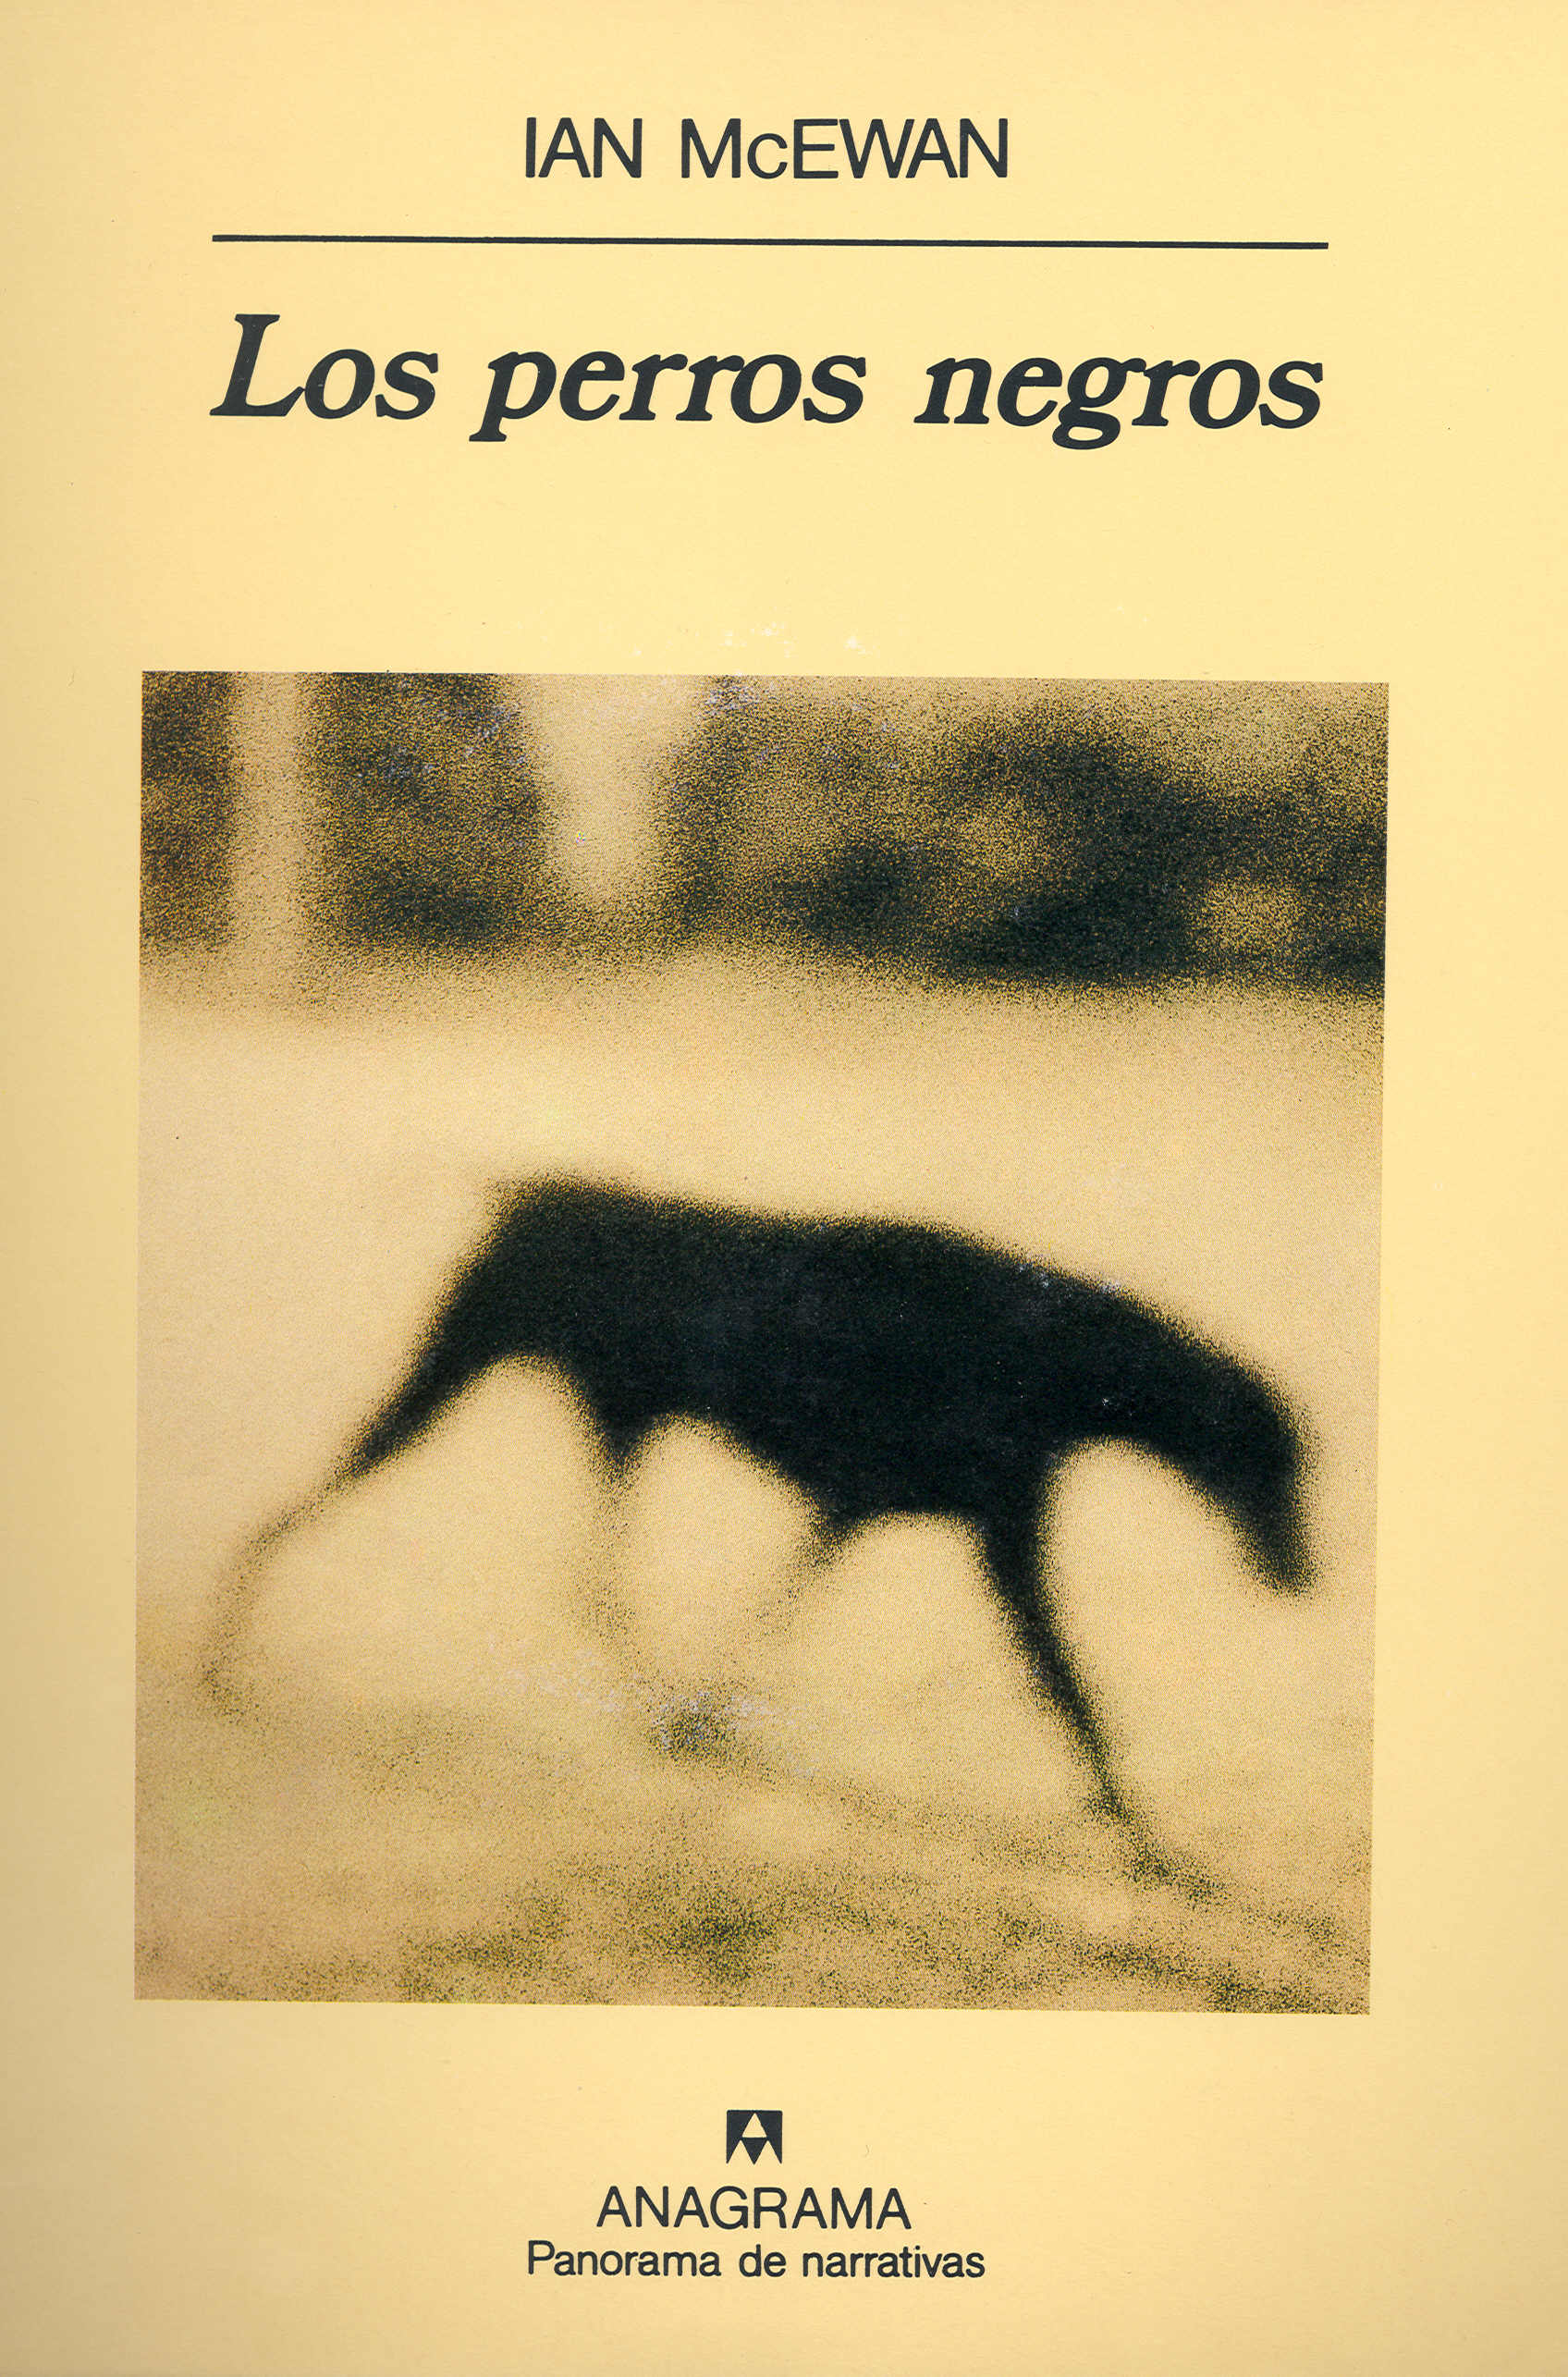 Los perros negros - McEwan, Ian - 978-84-339-1189-6 - Editorial ...